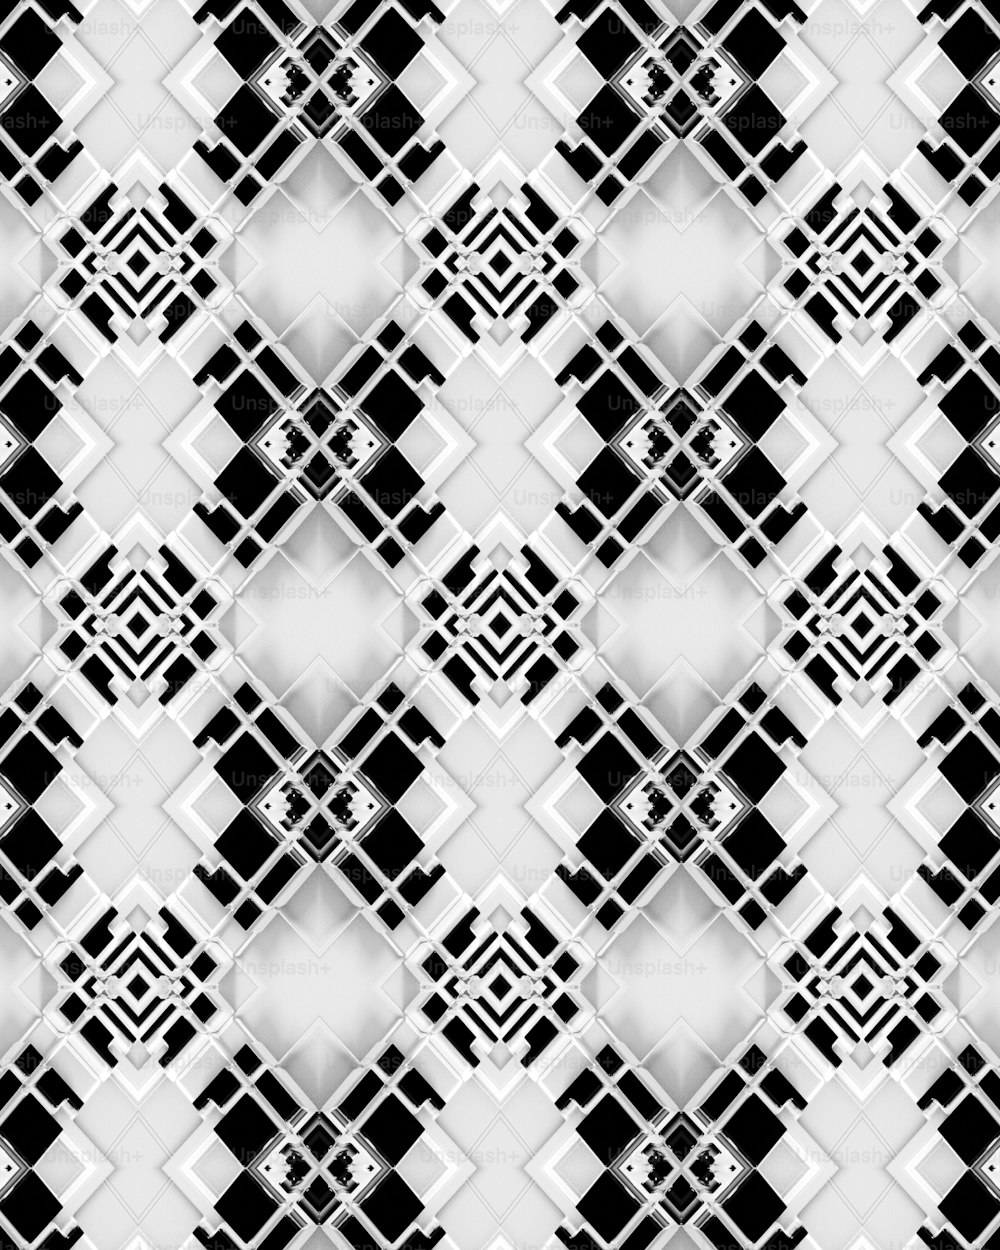 Un patrón en blanco y negro con cuadrados